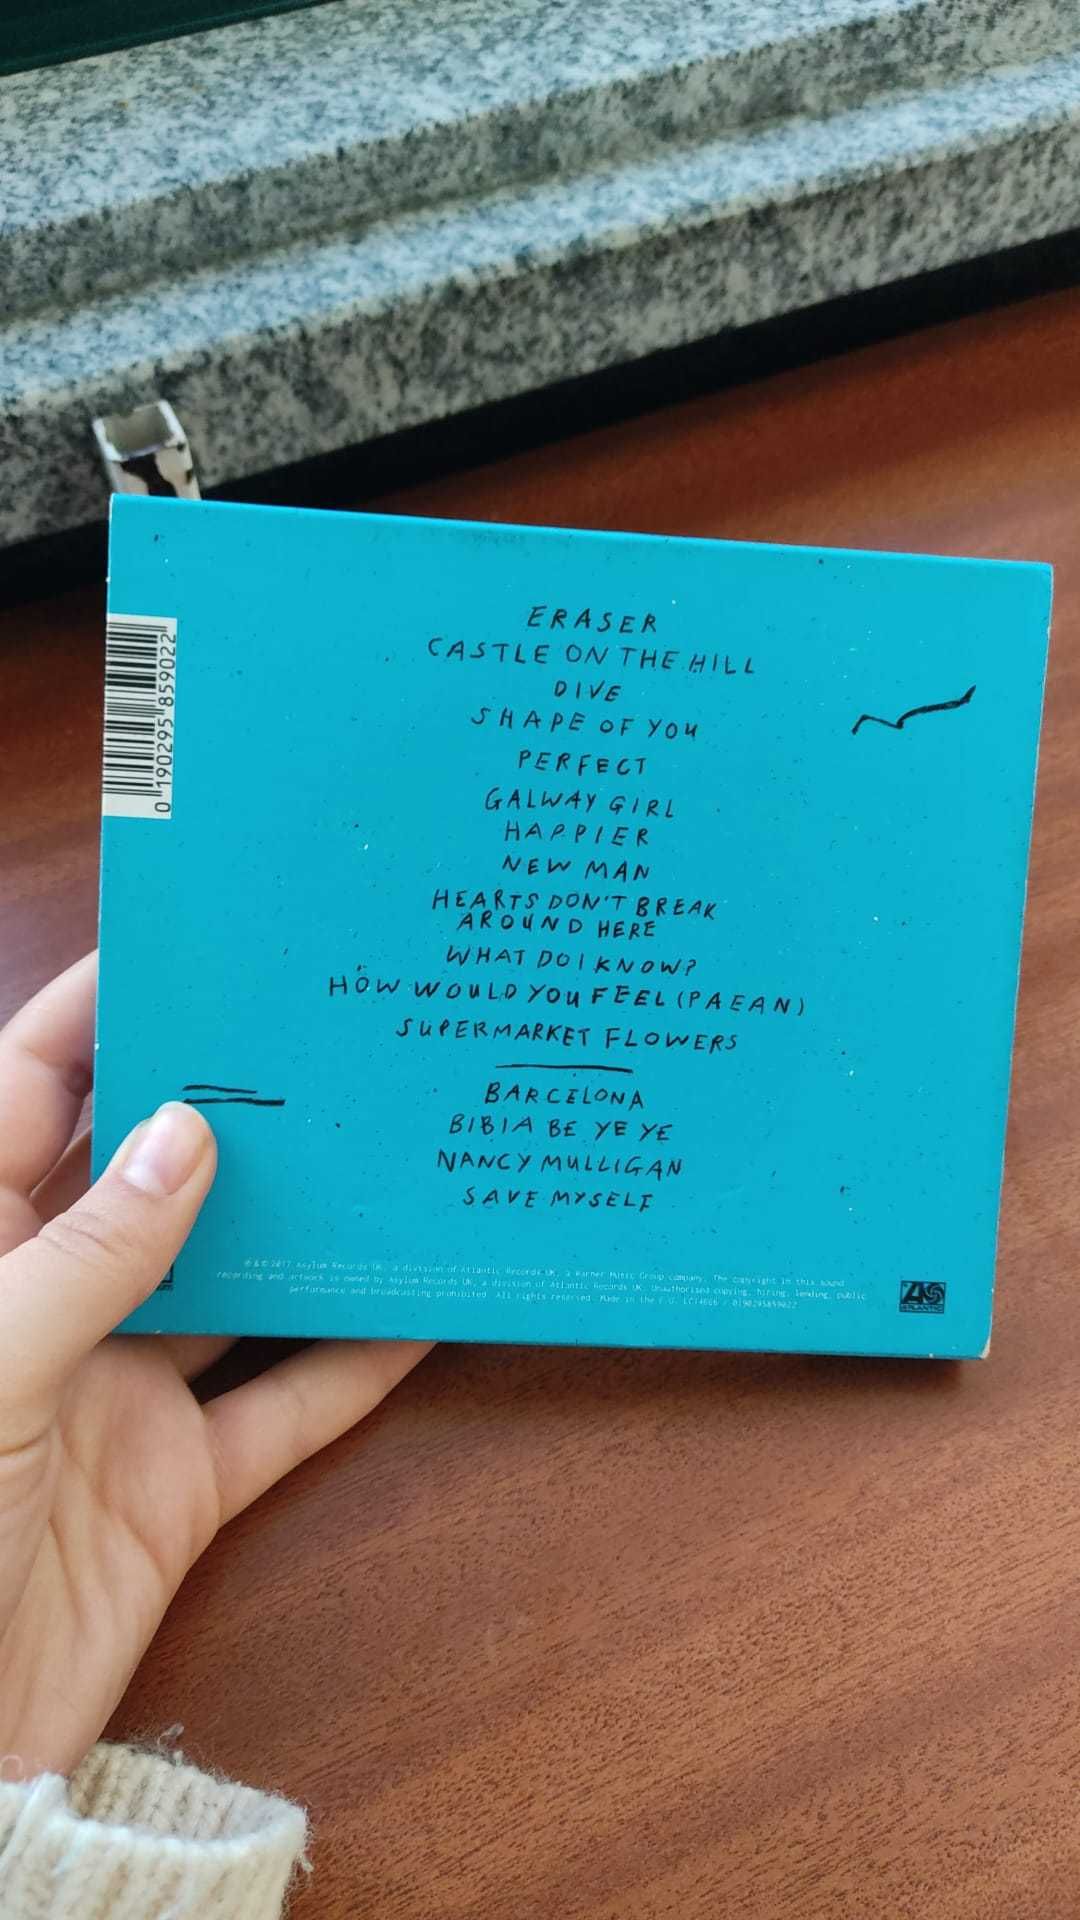 CD do álbum "%" do Ed Sheeran